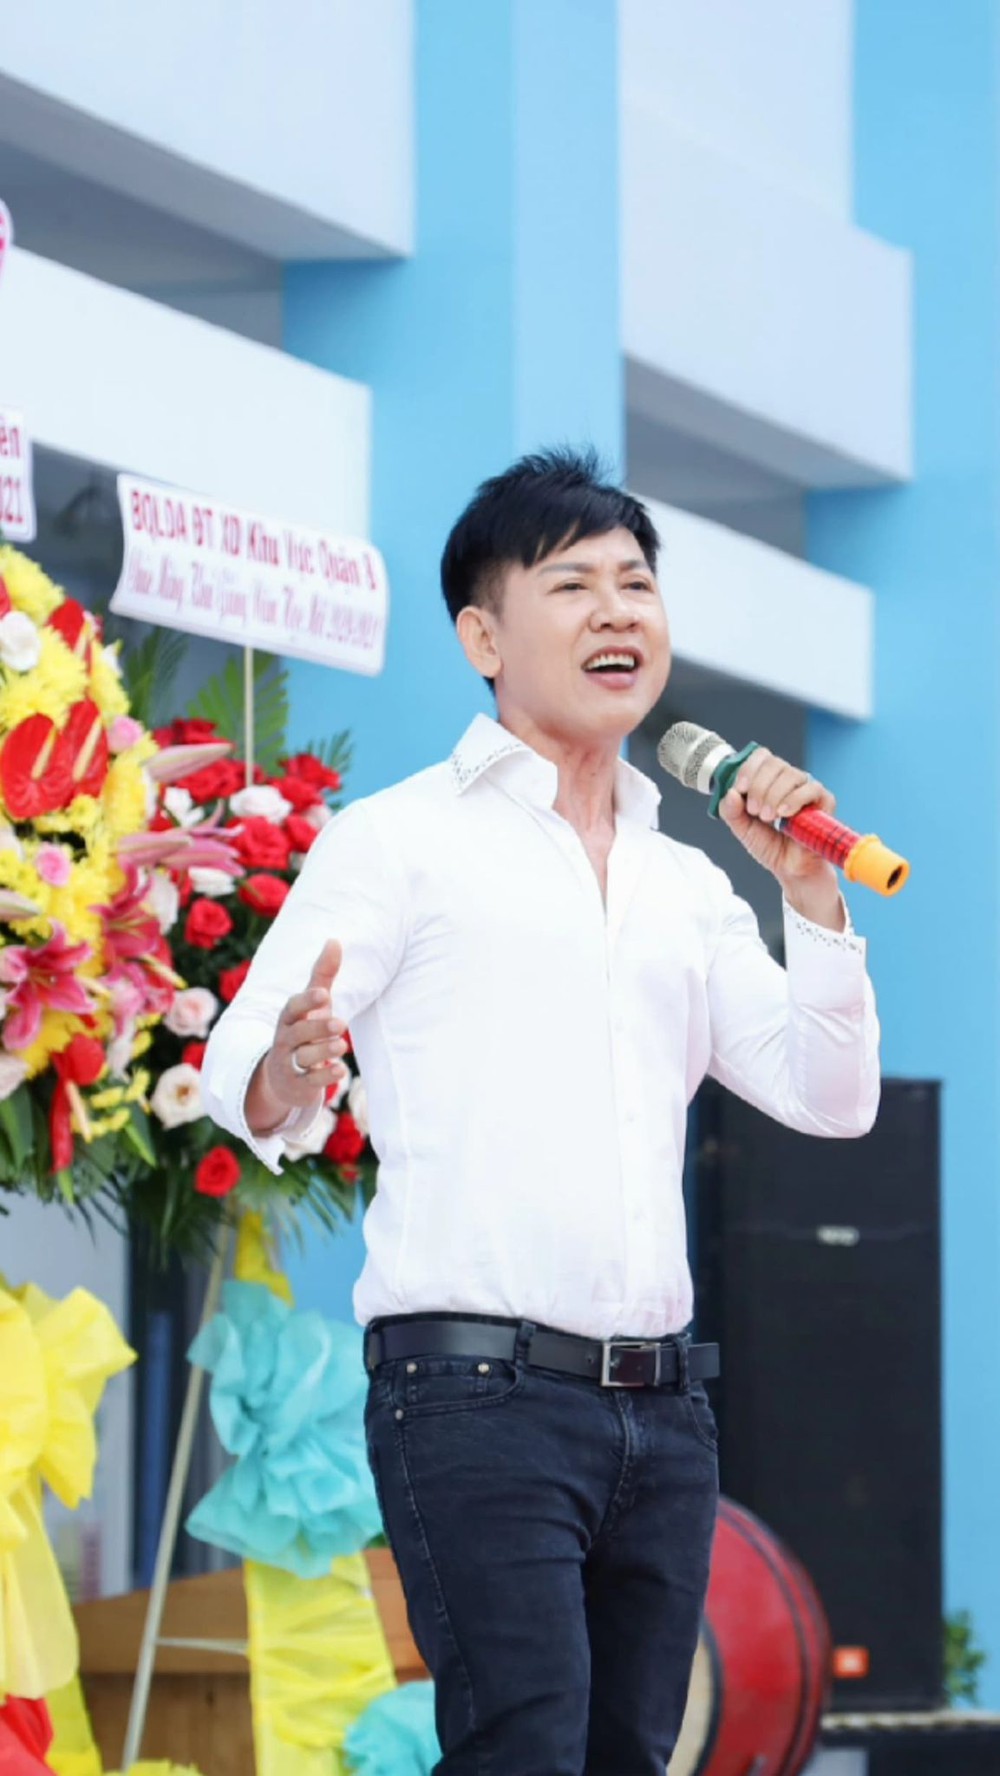 Ca sĩ Mai Tuấn: Khi đi hát, biết tôi là thầy giáo, mọi người có chút e dè, đối xử cũng khác - Ảnh 1.